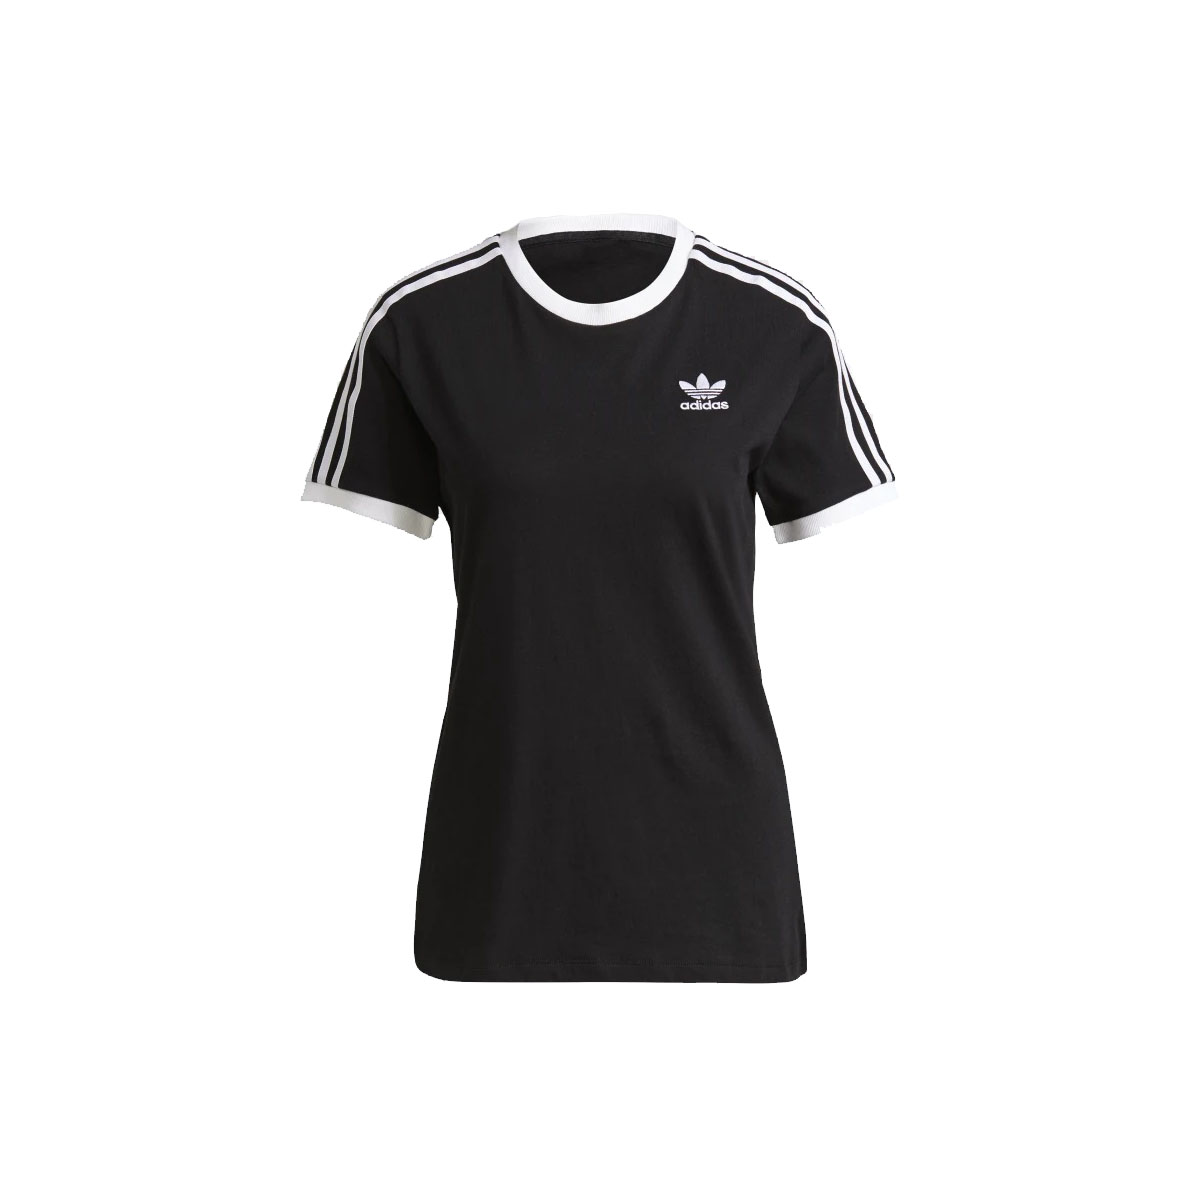 Camiseta Feminina Adidas Adicolor Classics 3 Stripes - Black/ White